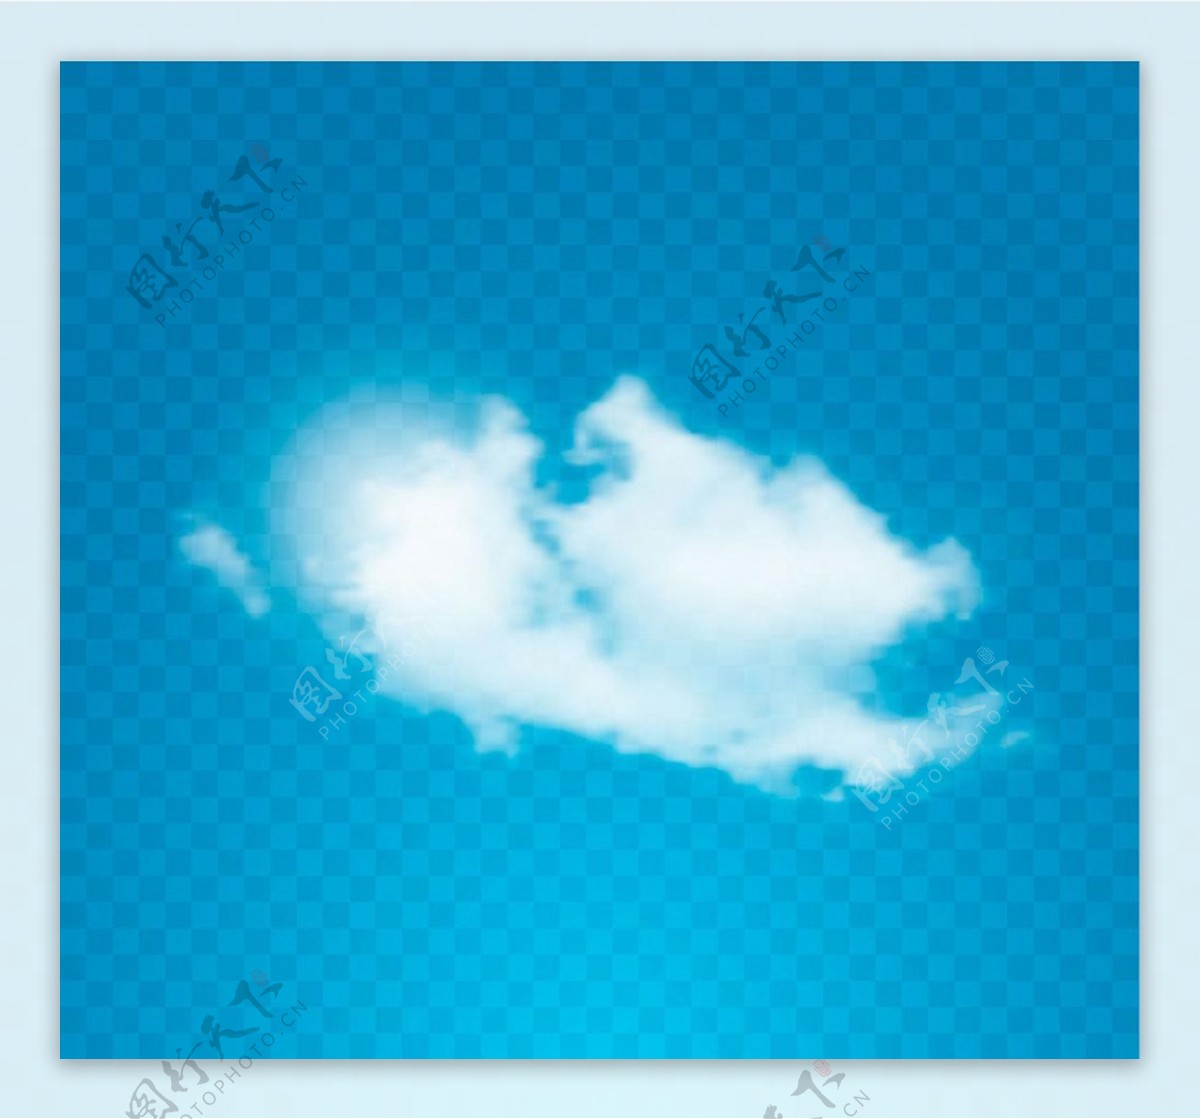 蓝天白云矢量图片